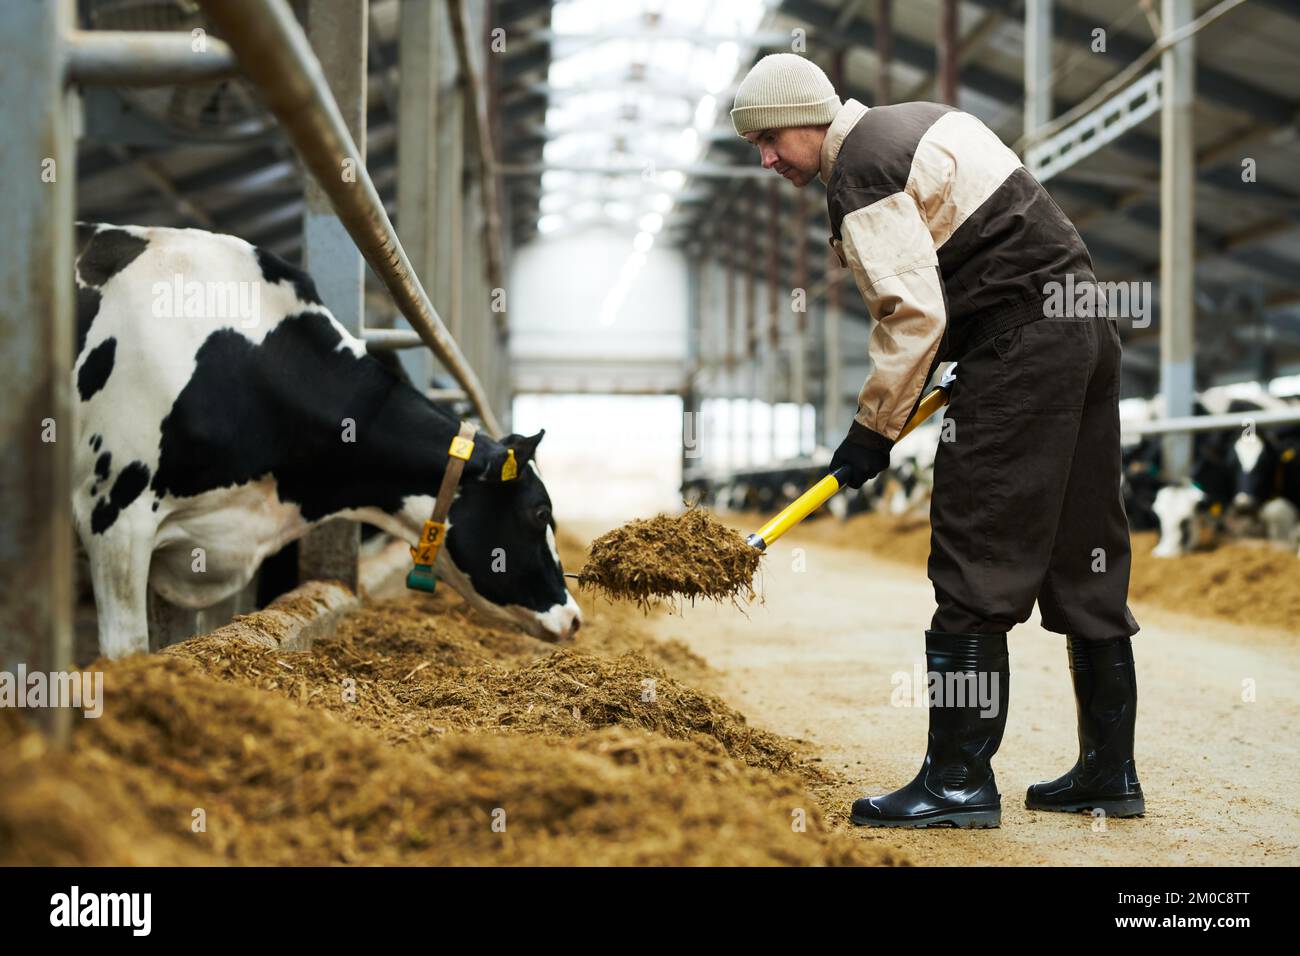 Vista laterale del giovane agricoltore maschio con l'utensile da lavoro che si piega sul foraggio mentre vi mette fucina fresca per il pacco di mucche da latte purebred Foto Stock